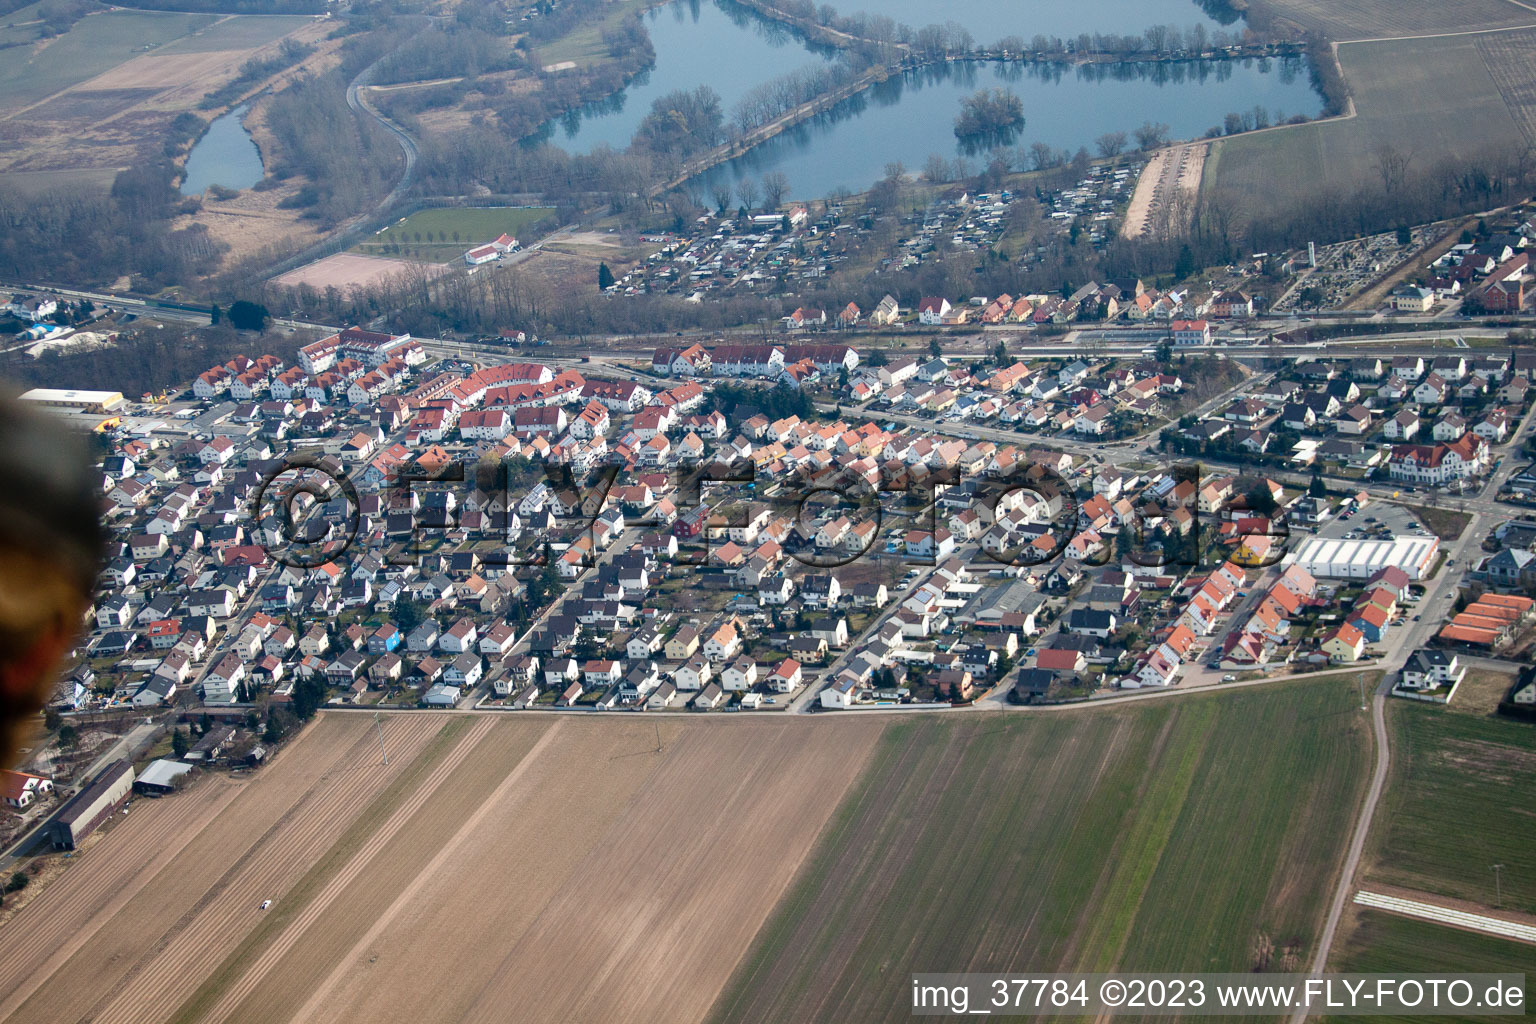 Luftbild von Ortsteil Sondernheim in Germersheim im Bundesland Rheinland-Pfalz, Deutschland